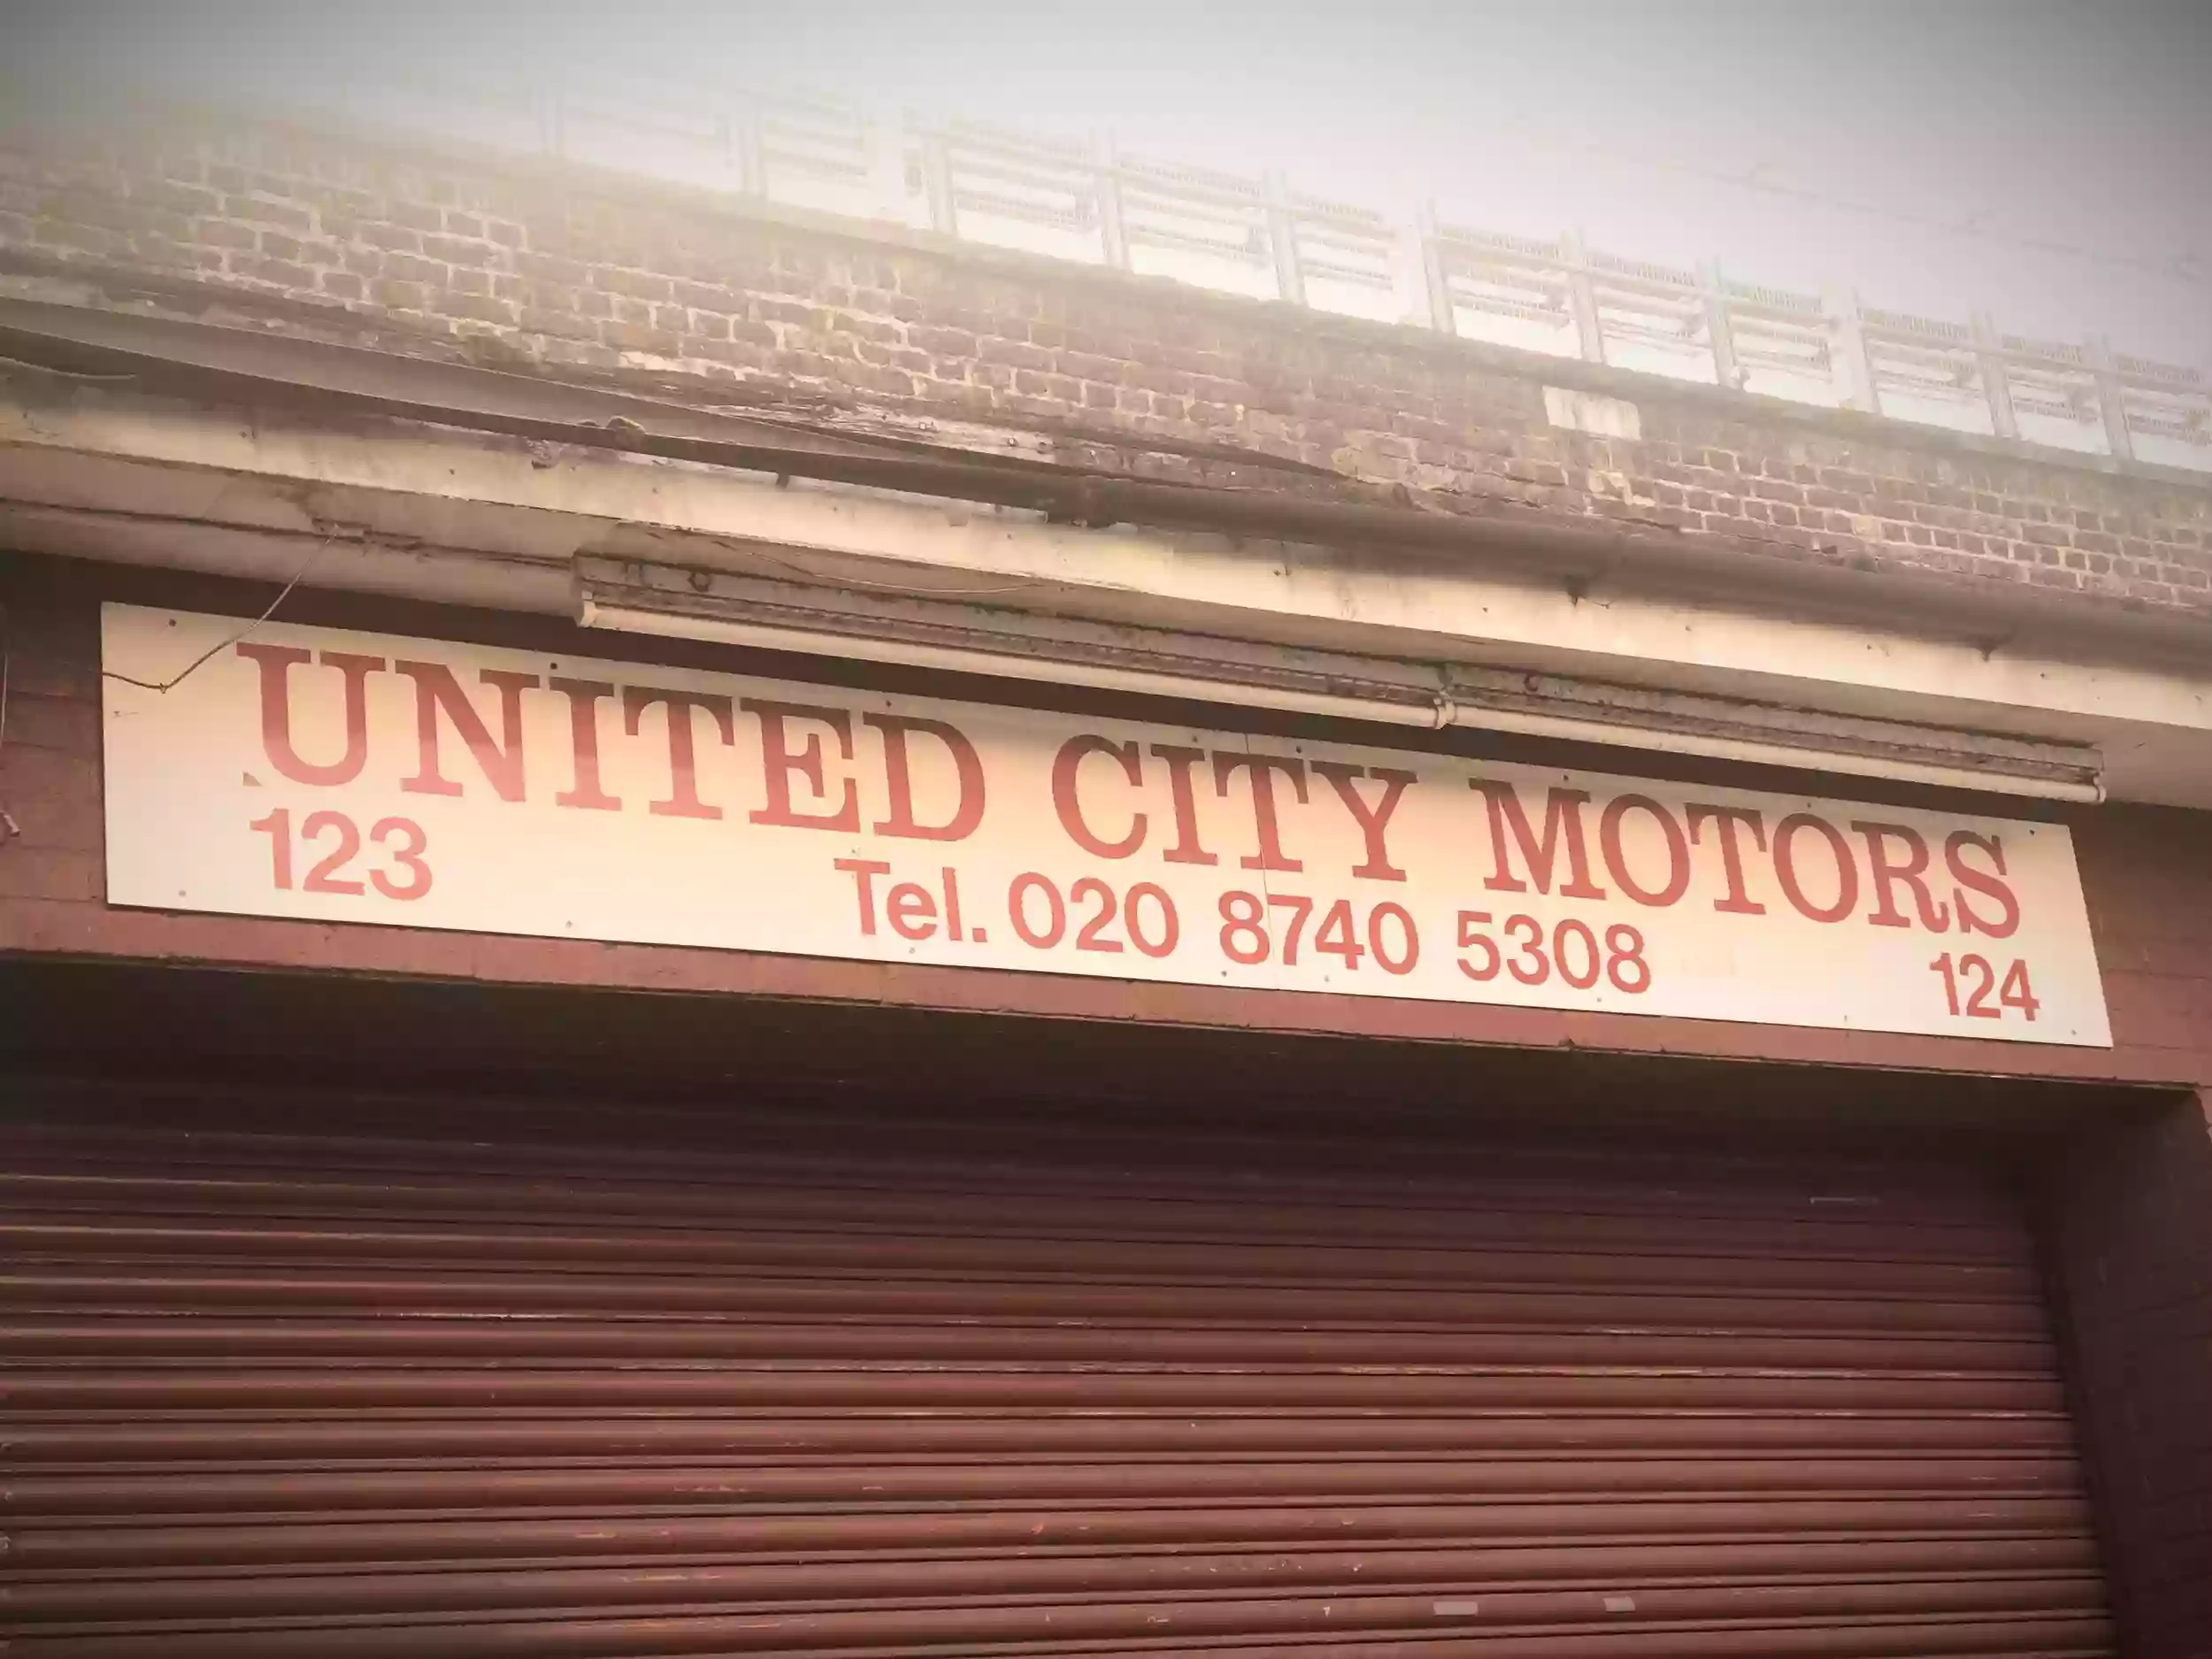 United City Motors